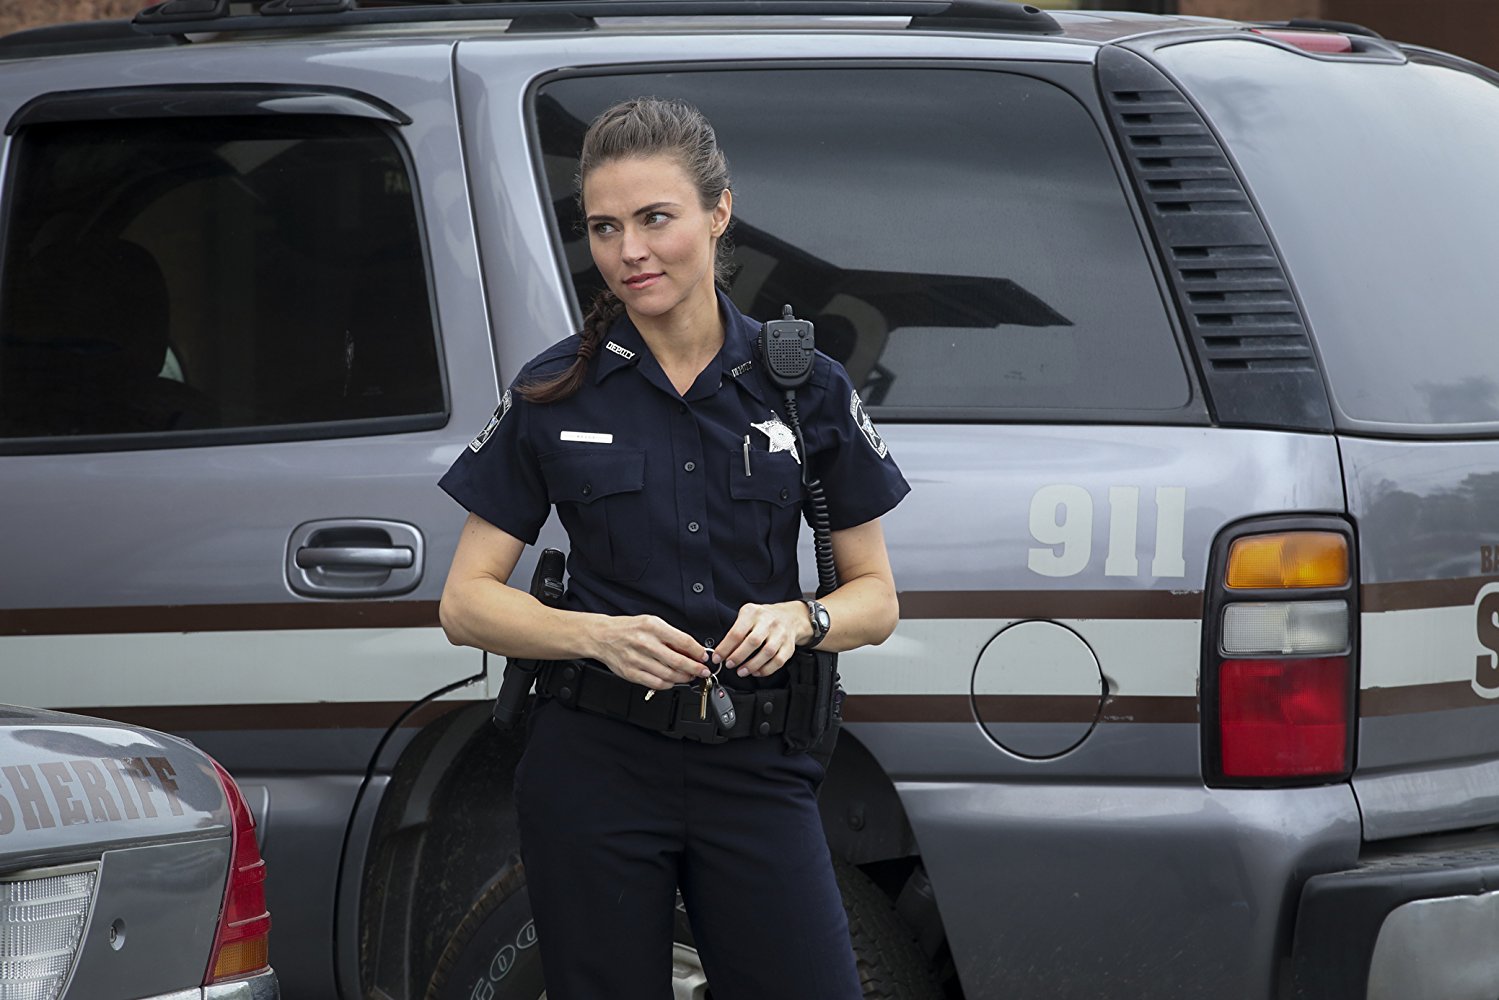 Deputy Siobhan Kelly